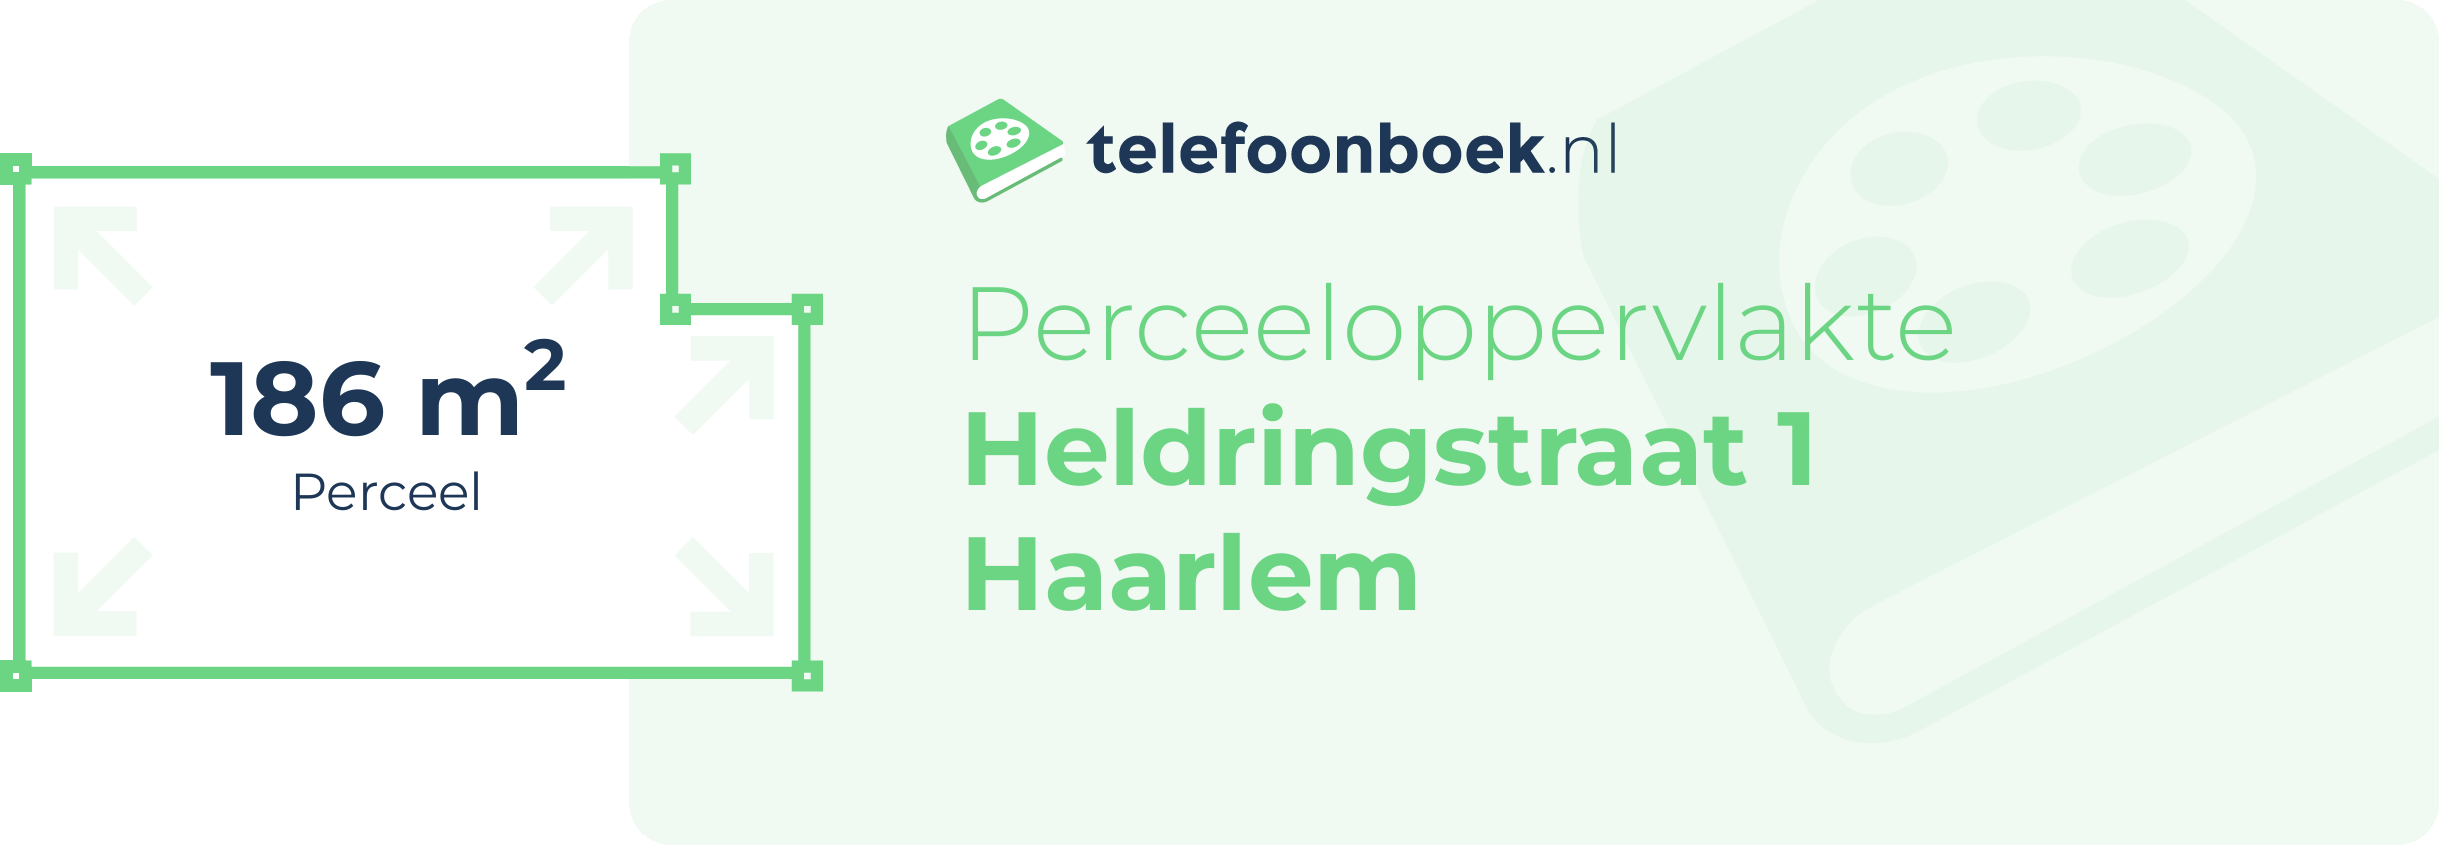 Perceeloppervlakte Heldringstraat 1 Haarlem